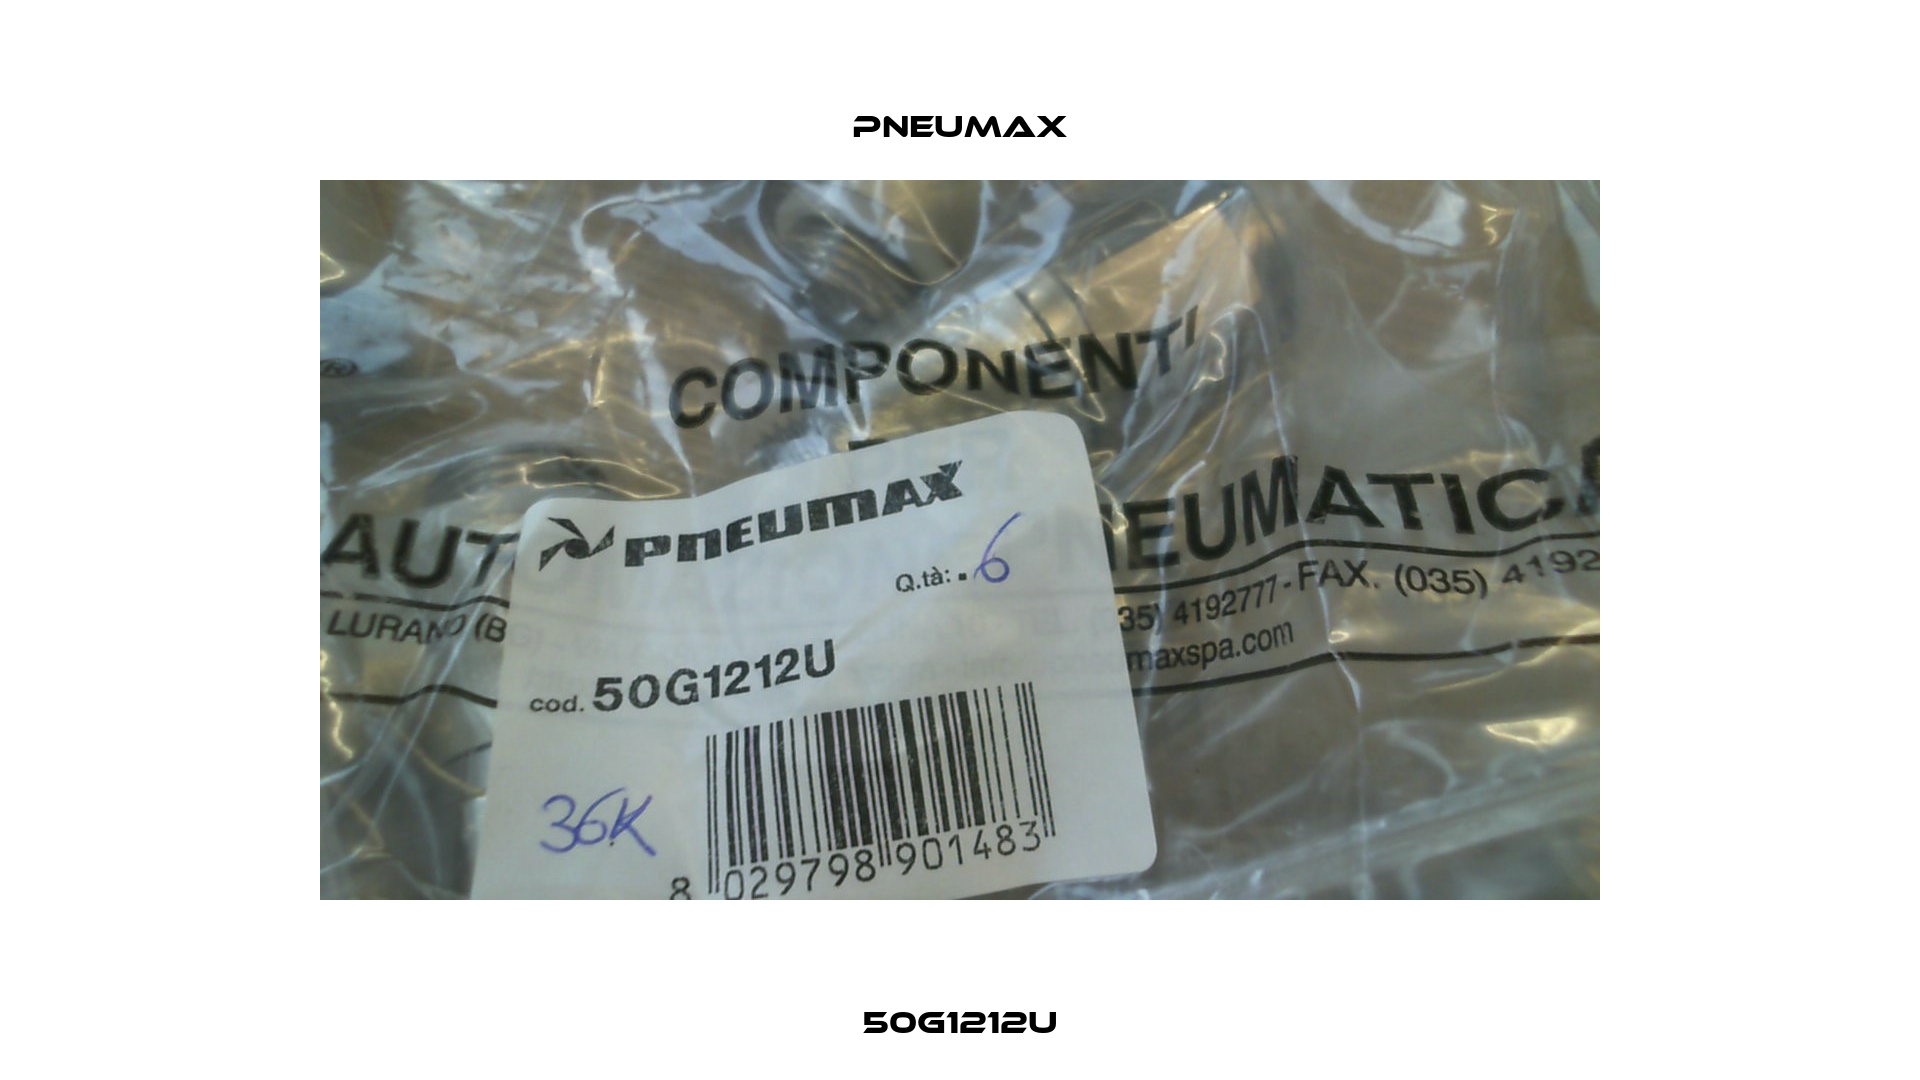 50G1212U Pneumax